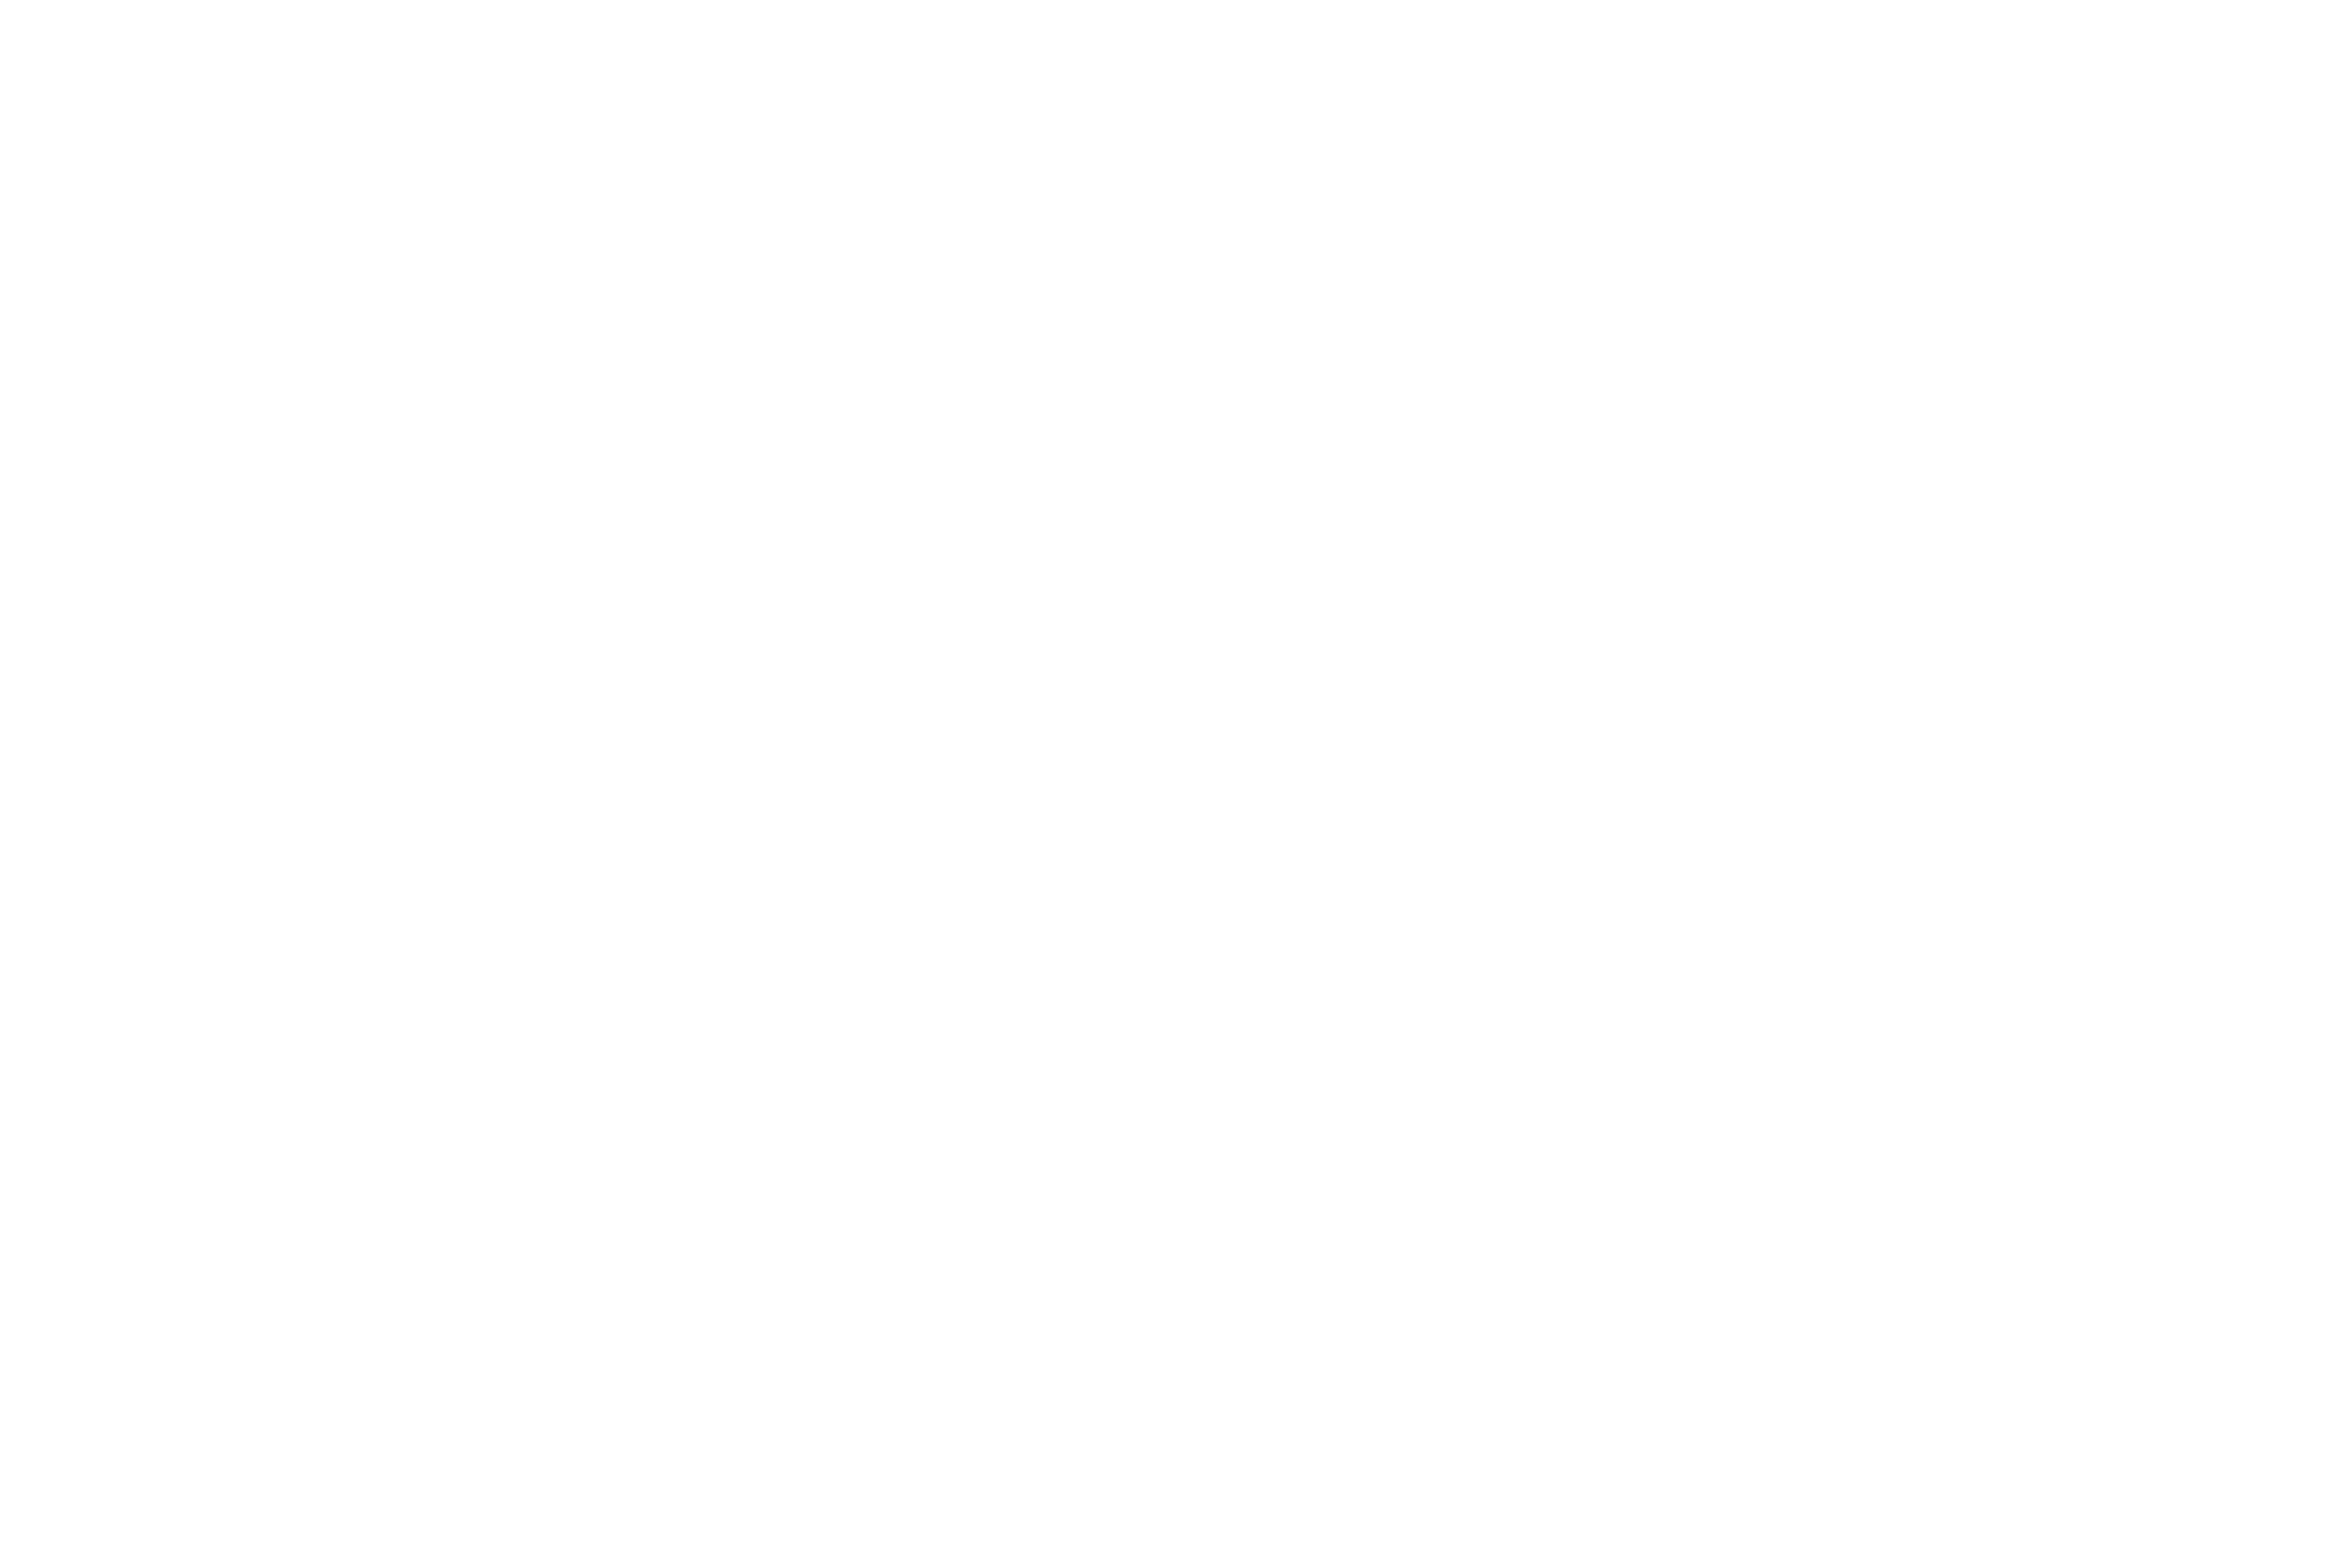 Whiterhino Photography